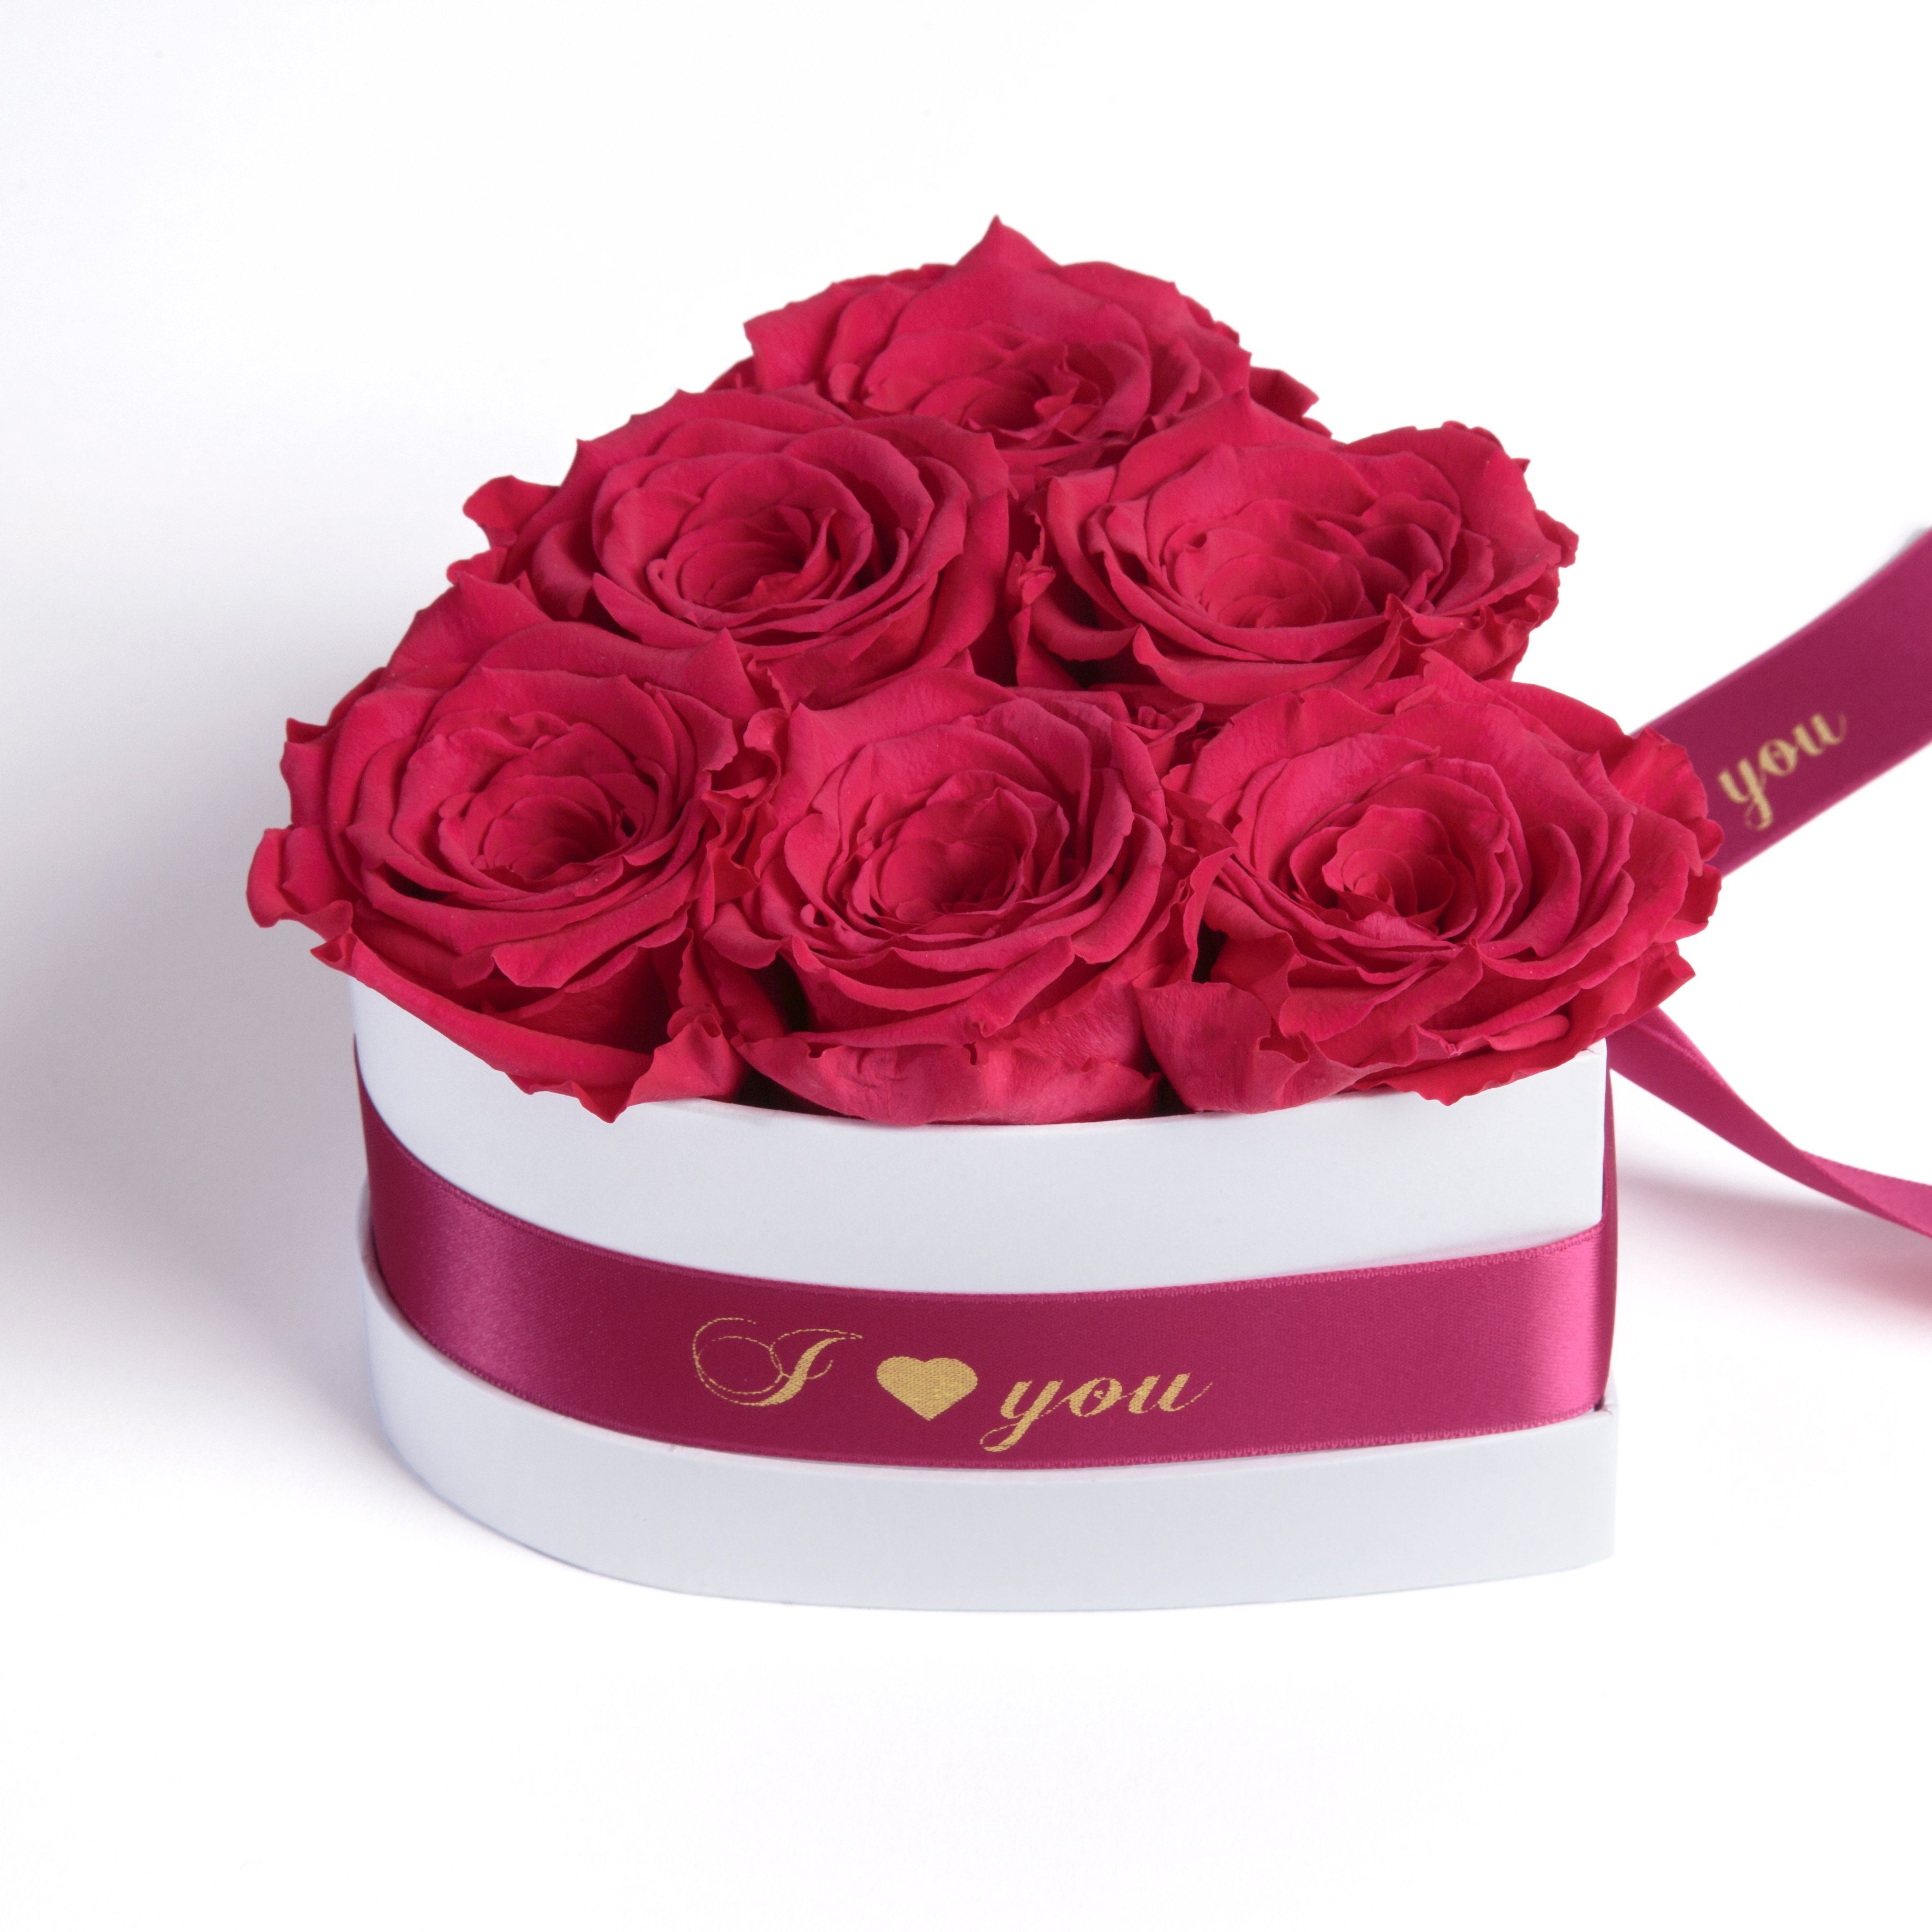 I Love You, Pink ROSEMARIE SCHULZ Heidelberg Infinity Rosenbox in Herzform konservierte Rosen Geschenk für Frauen 